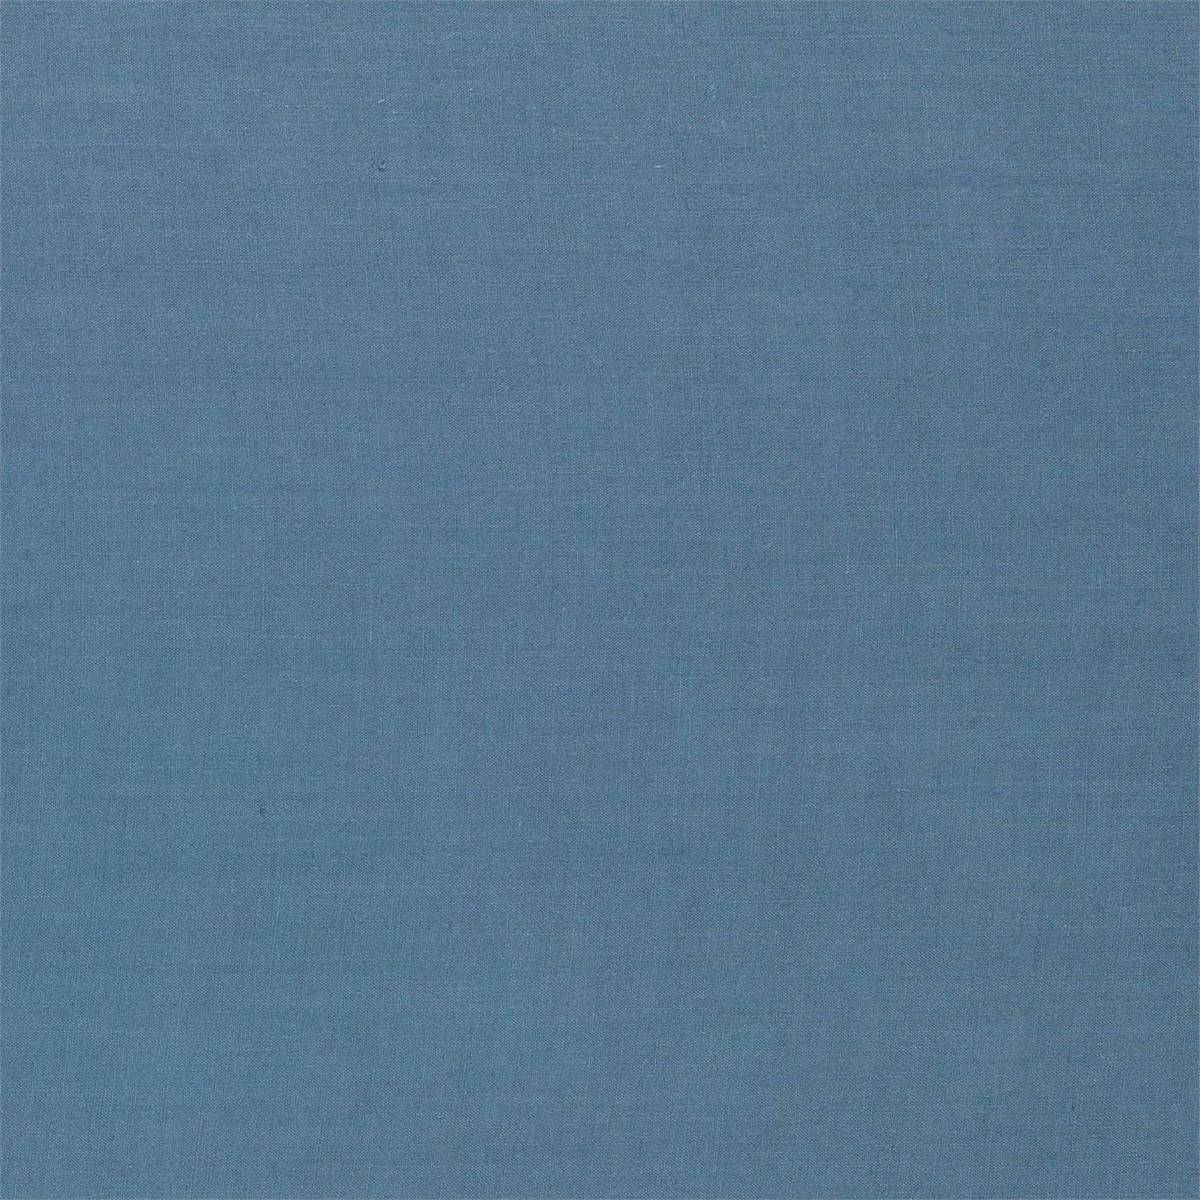 Zoffany Linens Blue Stone Fabric by Zoffany